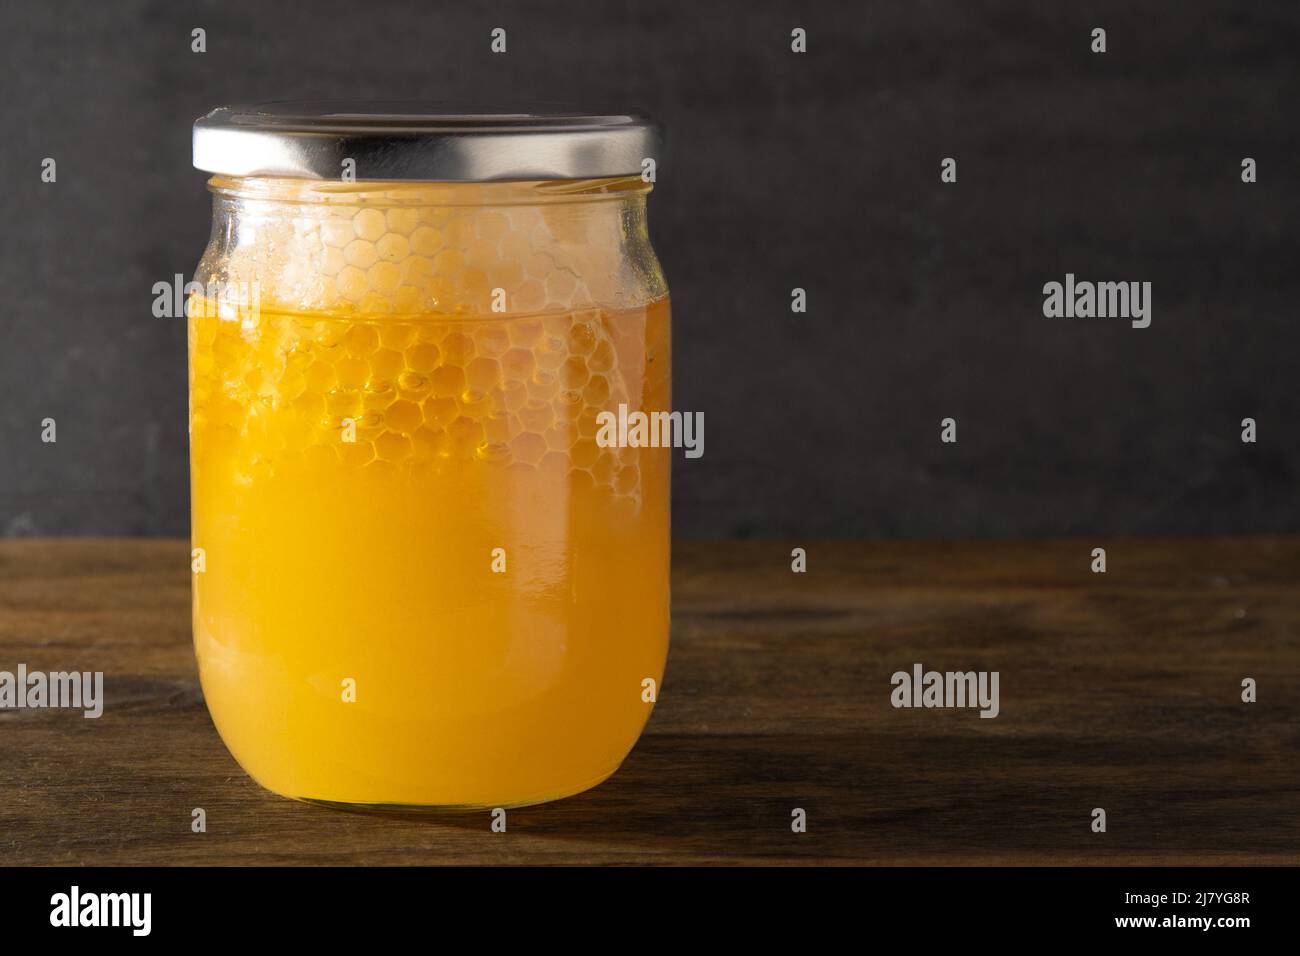 Tarro de miel con panales. Producto de abeja transparente amarilla. Embalaje de medio litro con espacio para una etiqueta. Fondo de madera. Miel de abeja en una jarra de cristal. Alimentos naturales saludables. Espacio de copia. Foto de stock